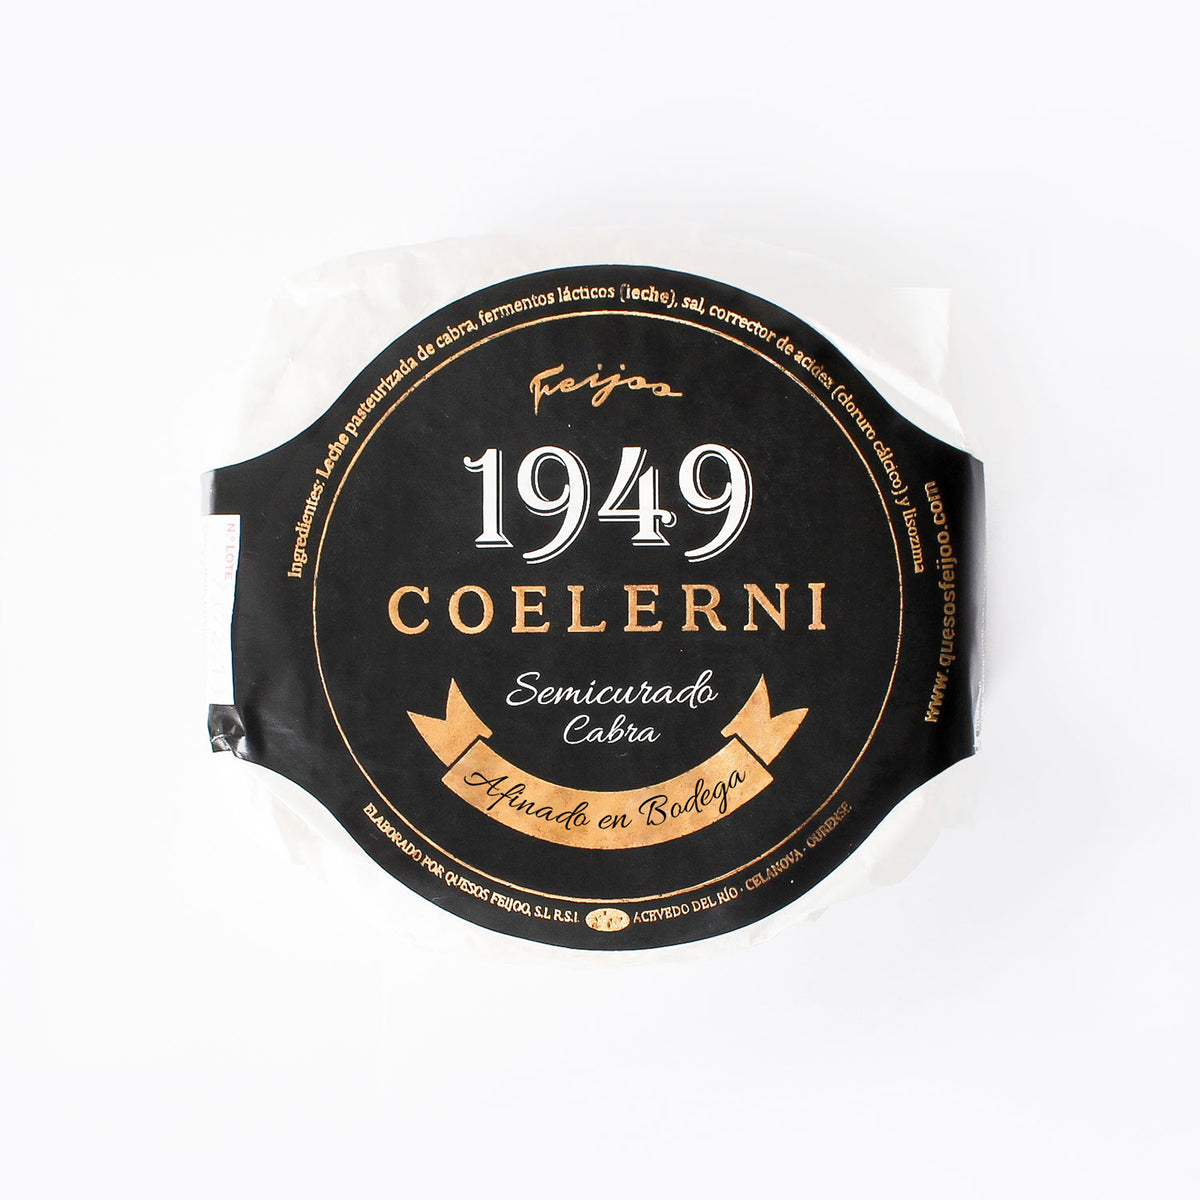 Queso de cabra semicurado Coelerni elaborado en galicia, madurado en bodega. Imagen principal con etiqueta negra, letras doradas y envoltorio en papel blanco.